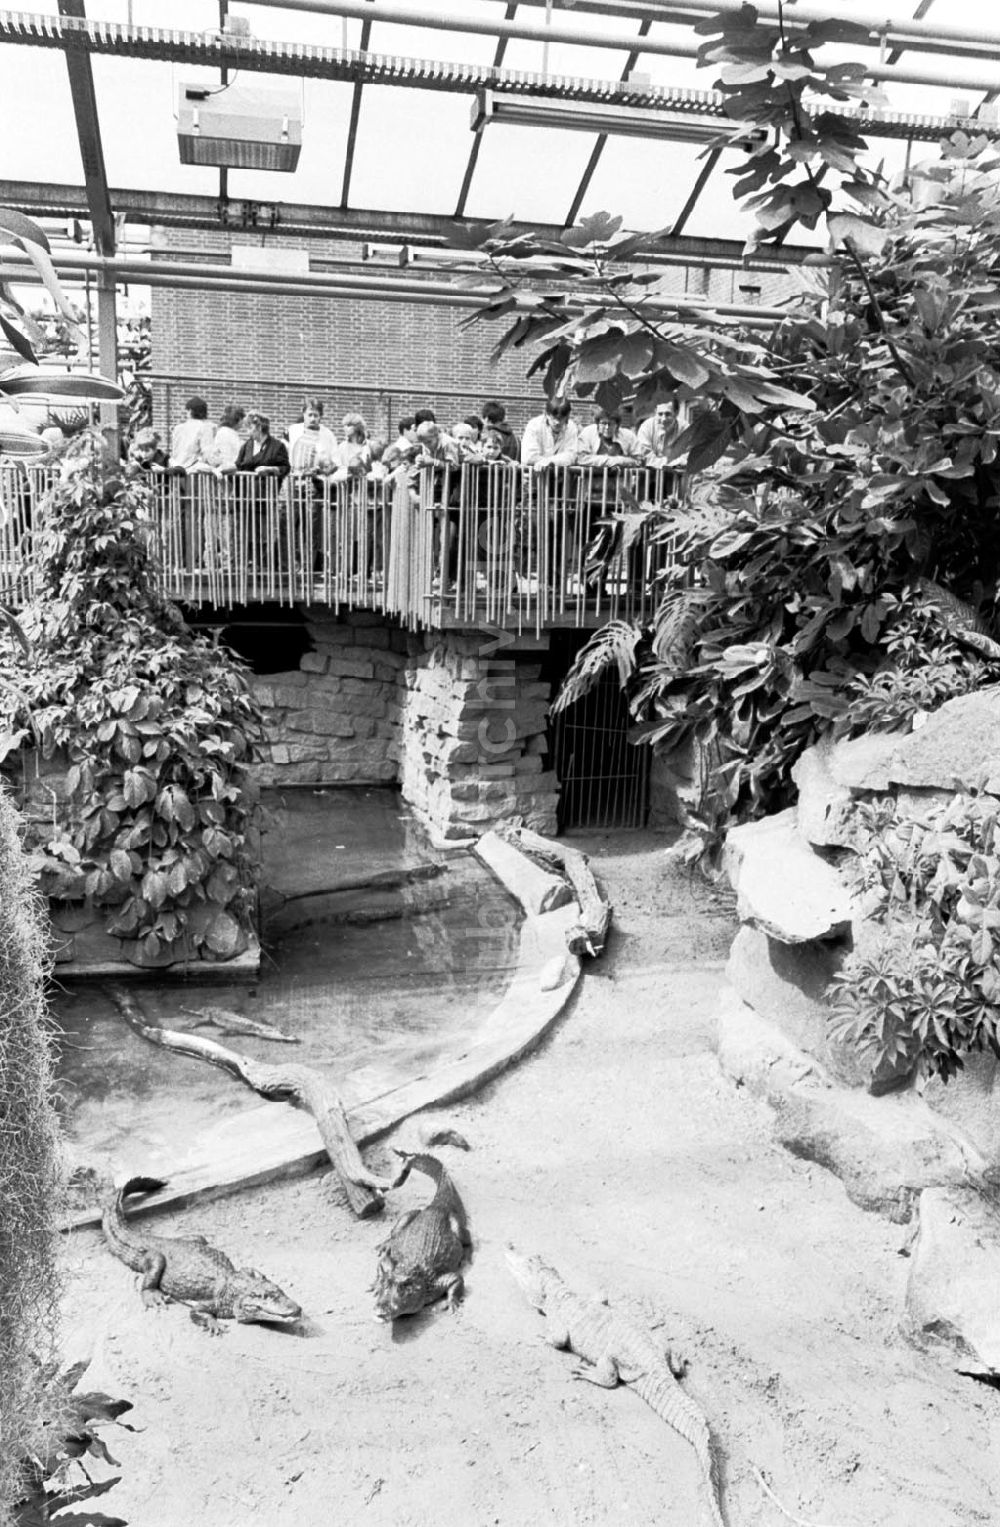 DDR-Bildarchiv: Berlin-Friedrichsfelde - Tierpark Berlin, Krokodile im Terrarium 03.08.89 Foto: ND/Grahn Umschlagnummer: 0918